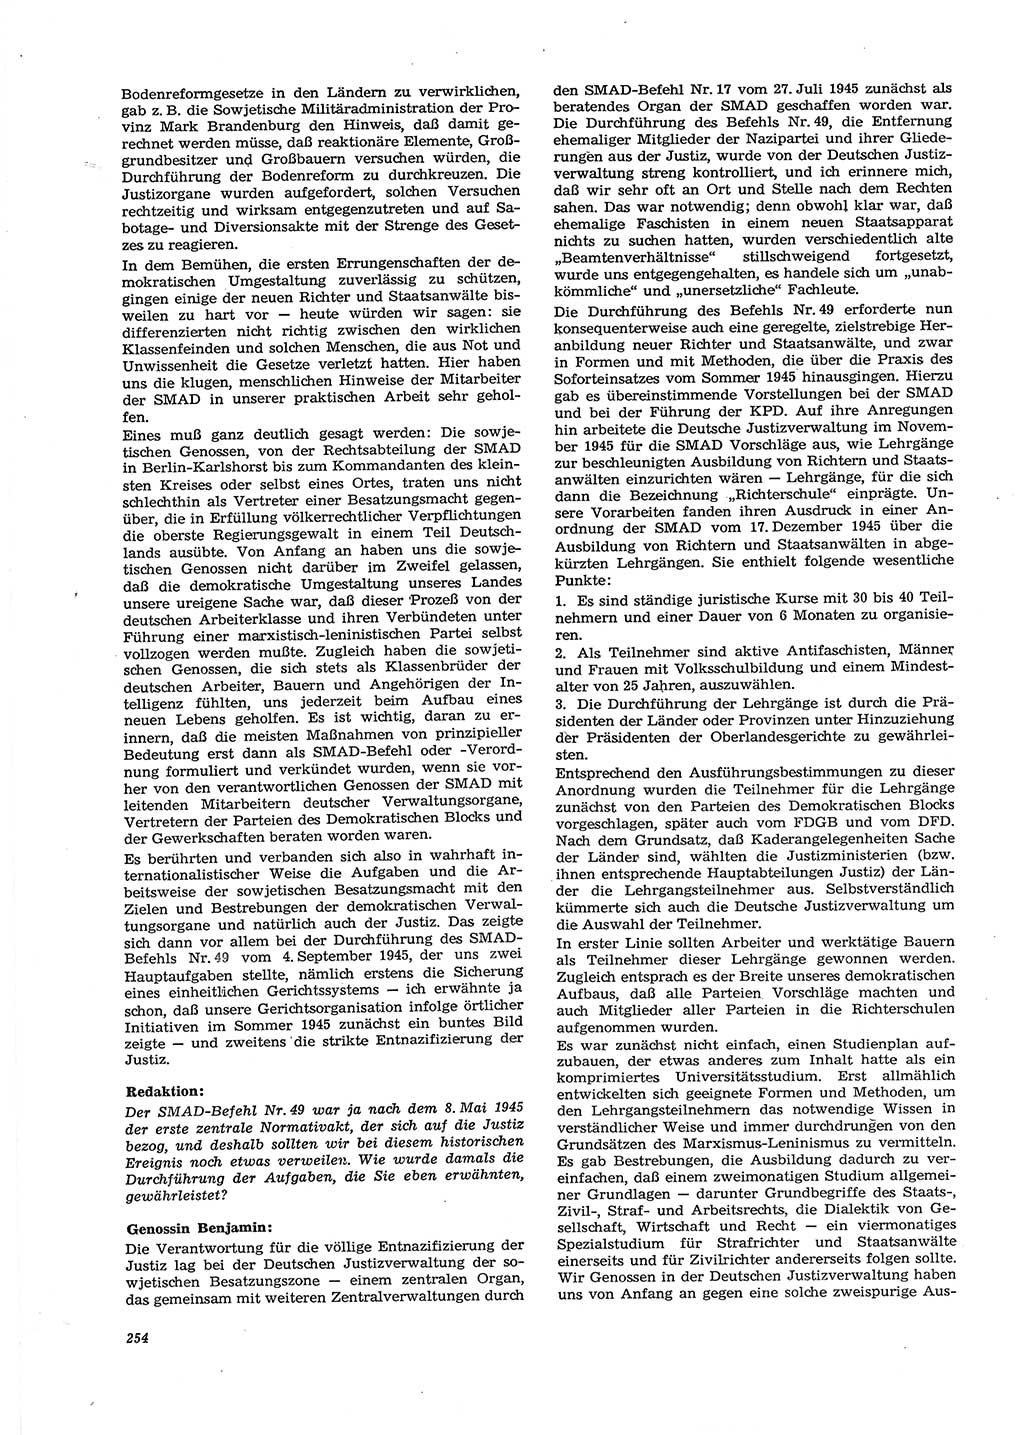 Neue Justiz (NJ), Zeitschrift für Recht und Rechtswissenschaft [Deutsche Demokratische Republik (DDR)], 29. Jahrgang 1975, Seite 254 (NJ DDR 1975, S. 254)